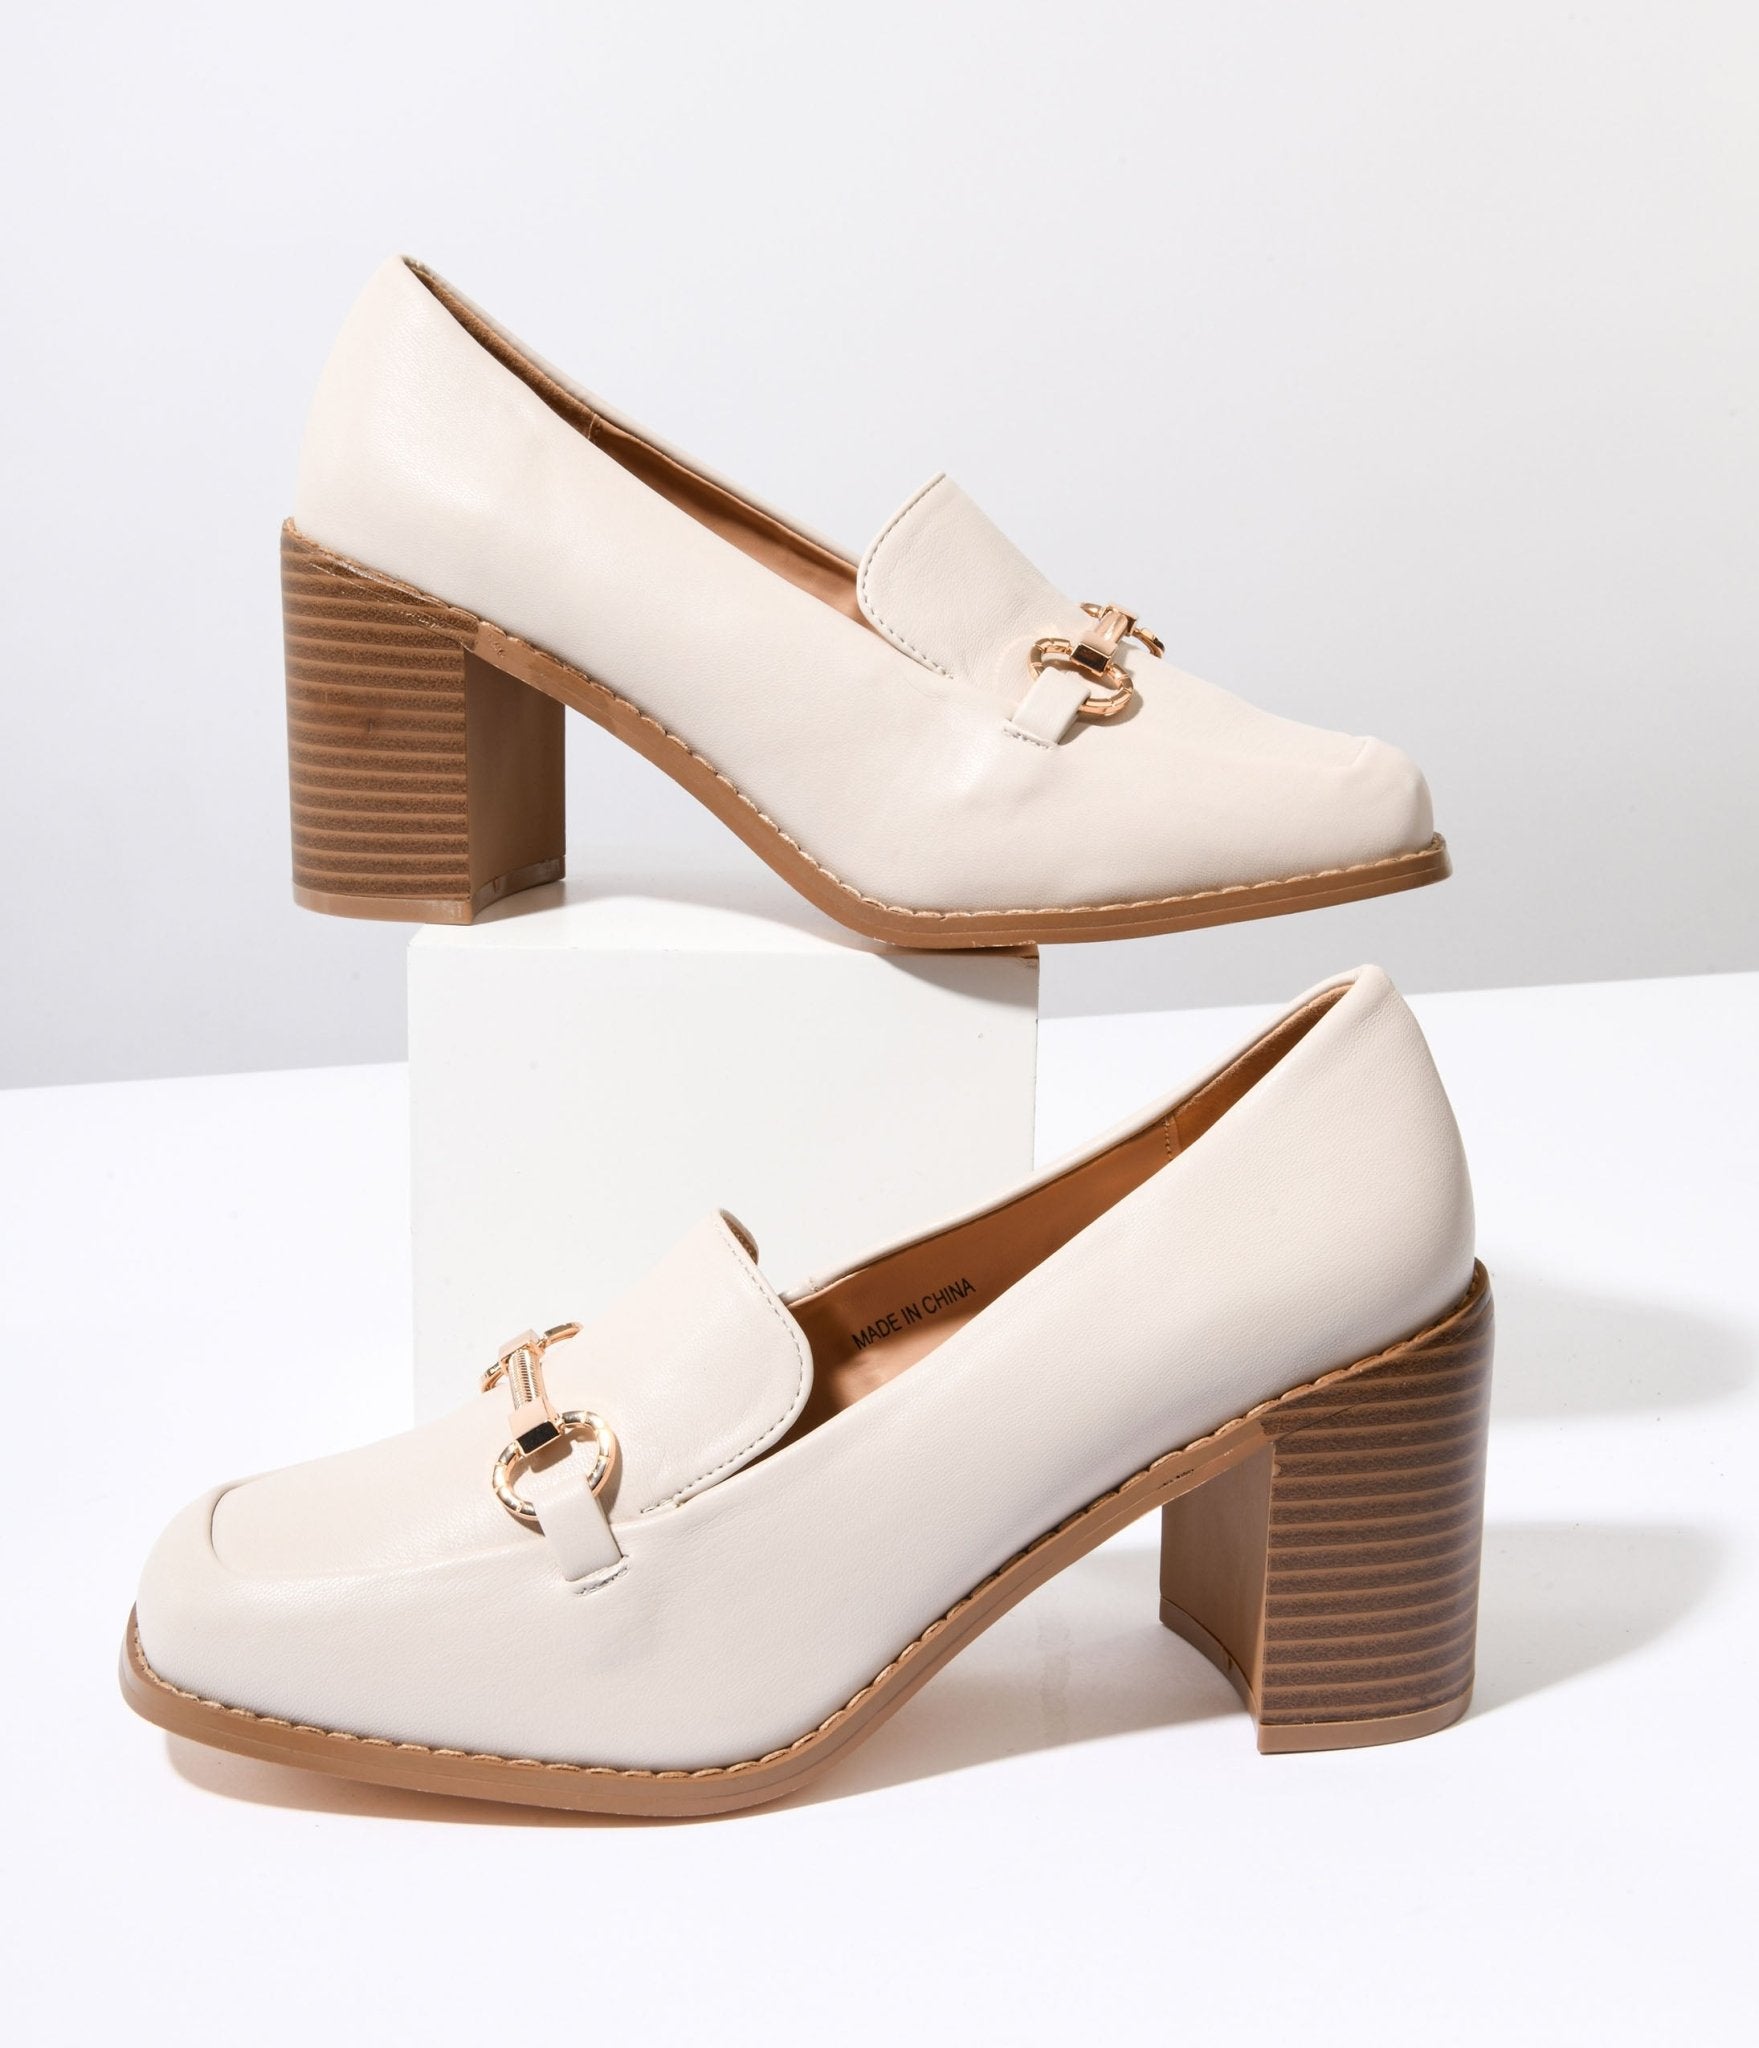 RAID Petunia square toe shoes in cream faux suede | ASOS